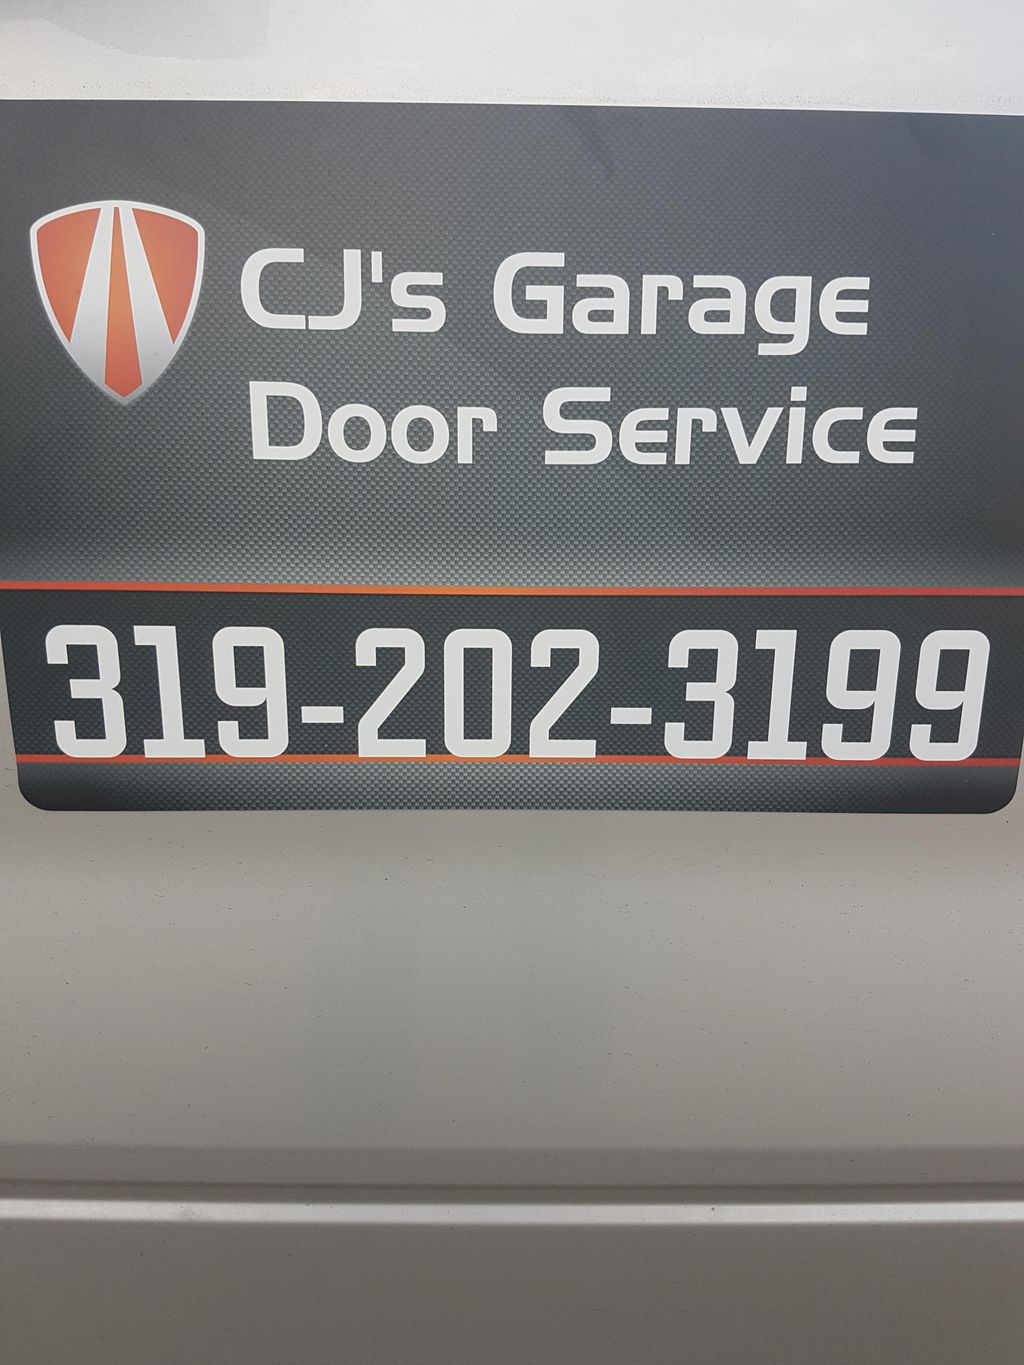 CJ's Garage Door Service